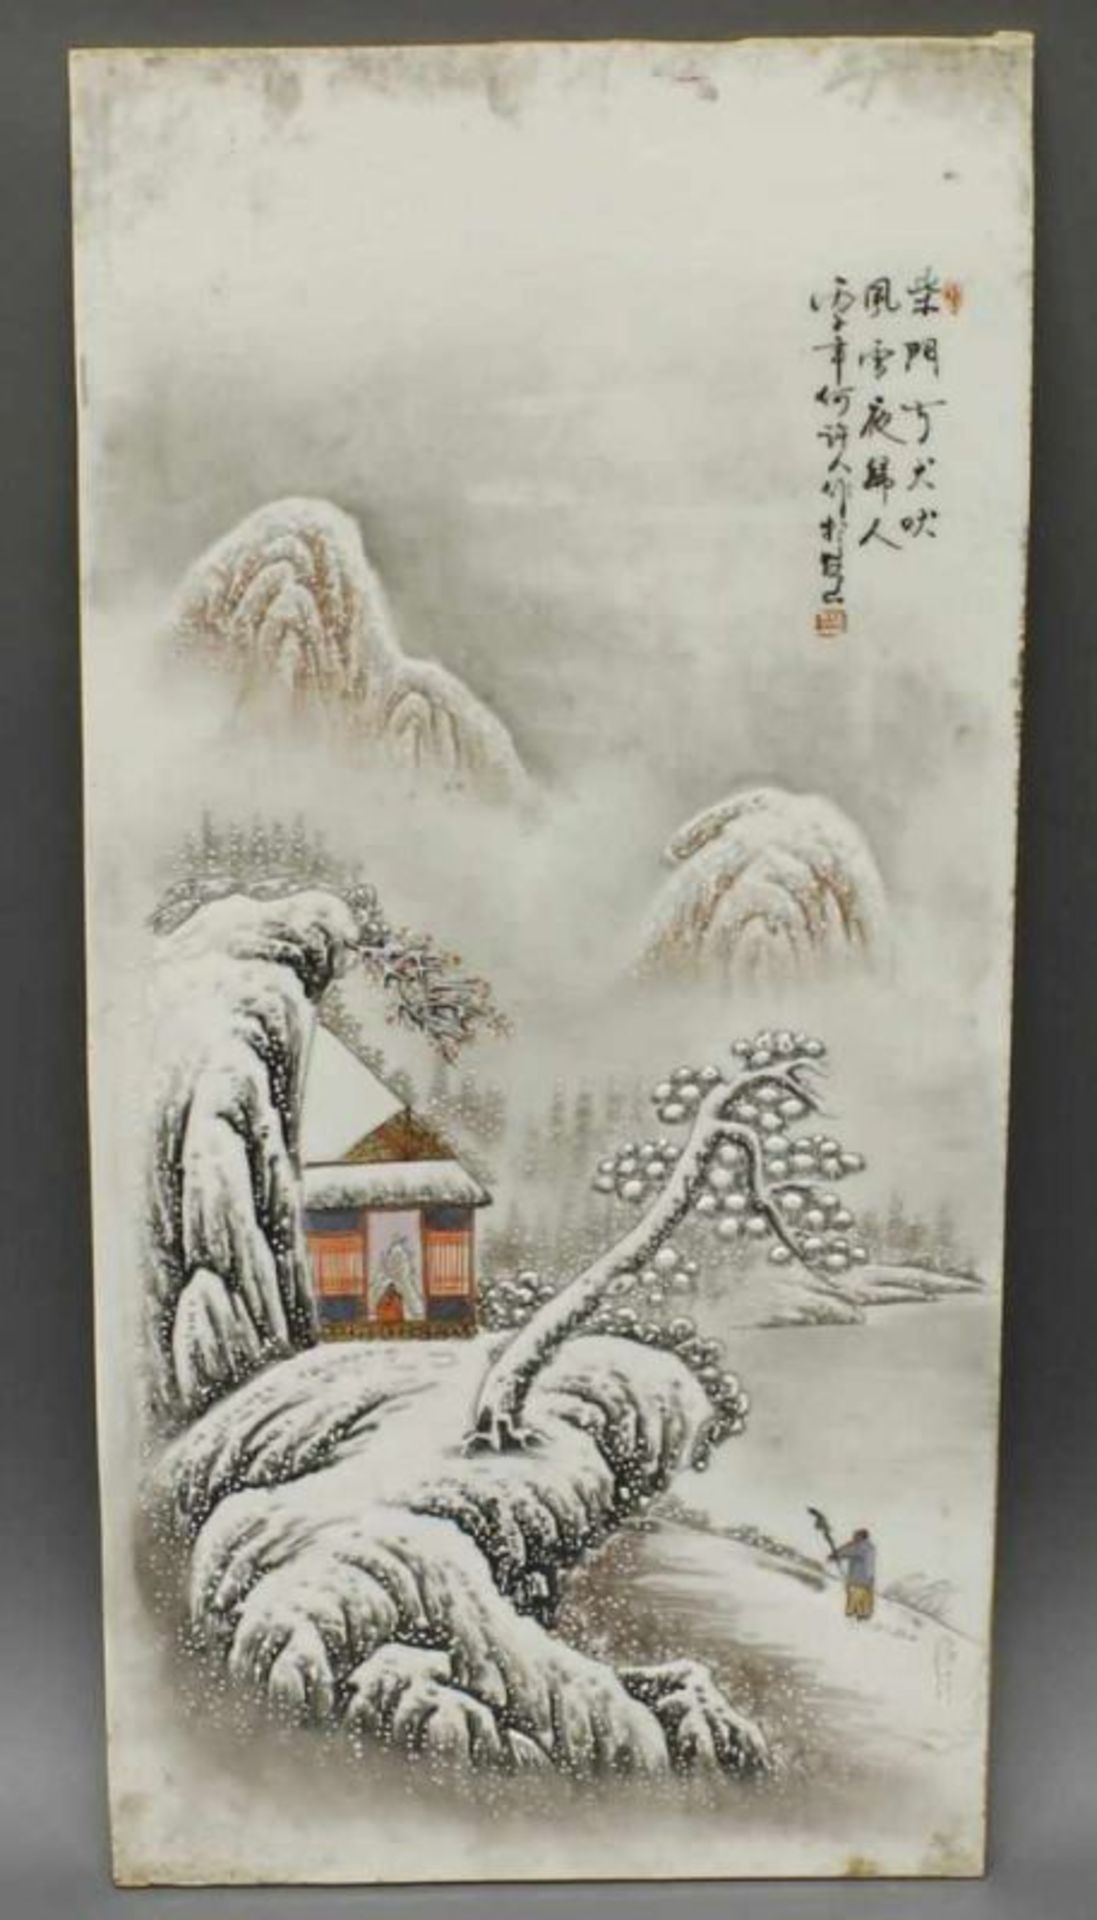 Porzellanbild, "Schneelandschaft", China, 20. Jh., mit chinesischen Schriftzeichen, 54 x 26 cm 20.00